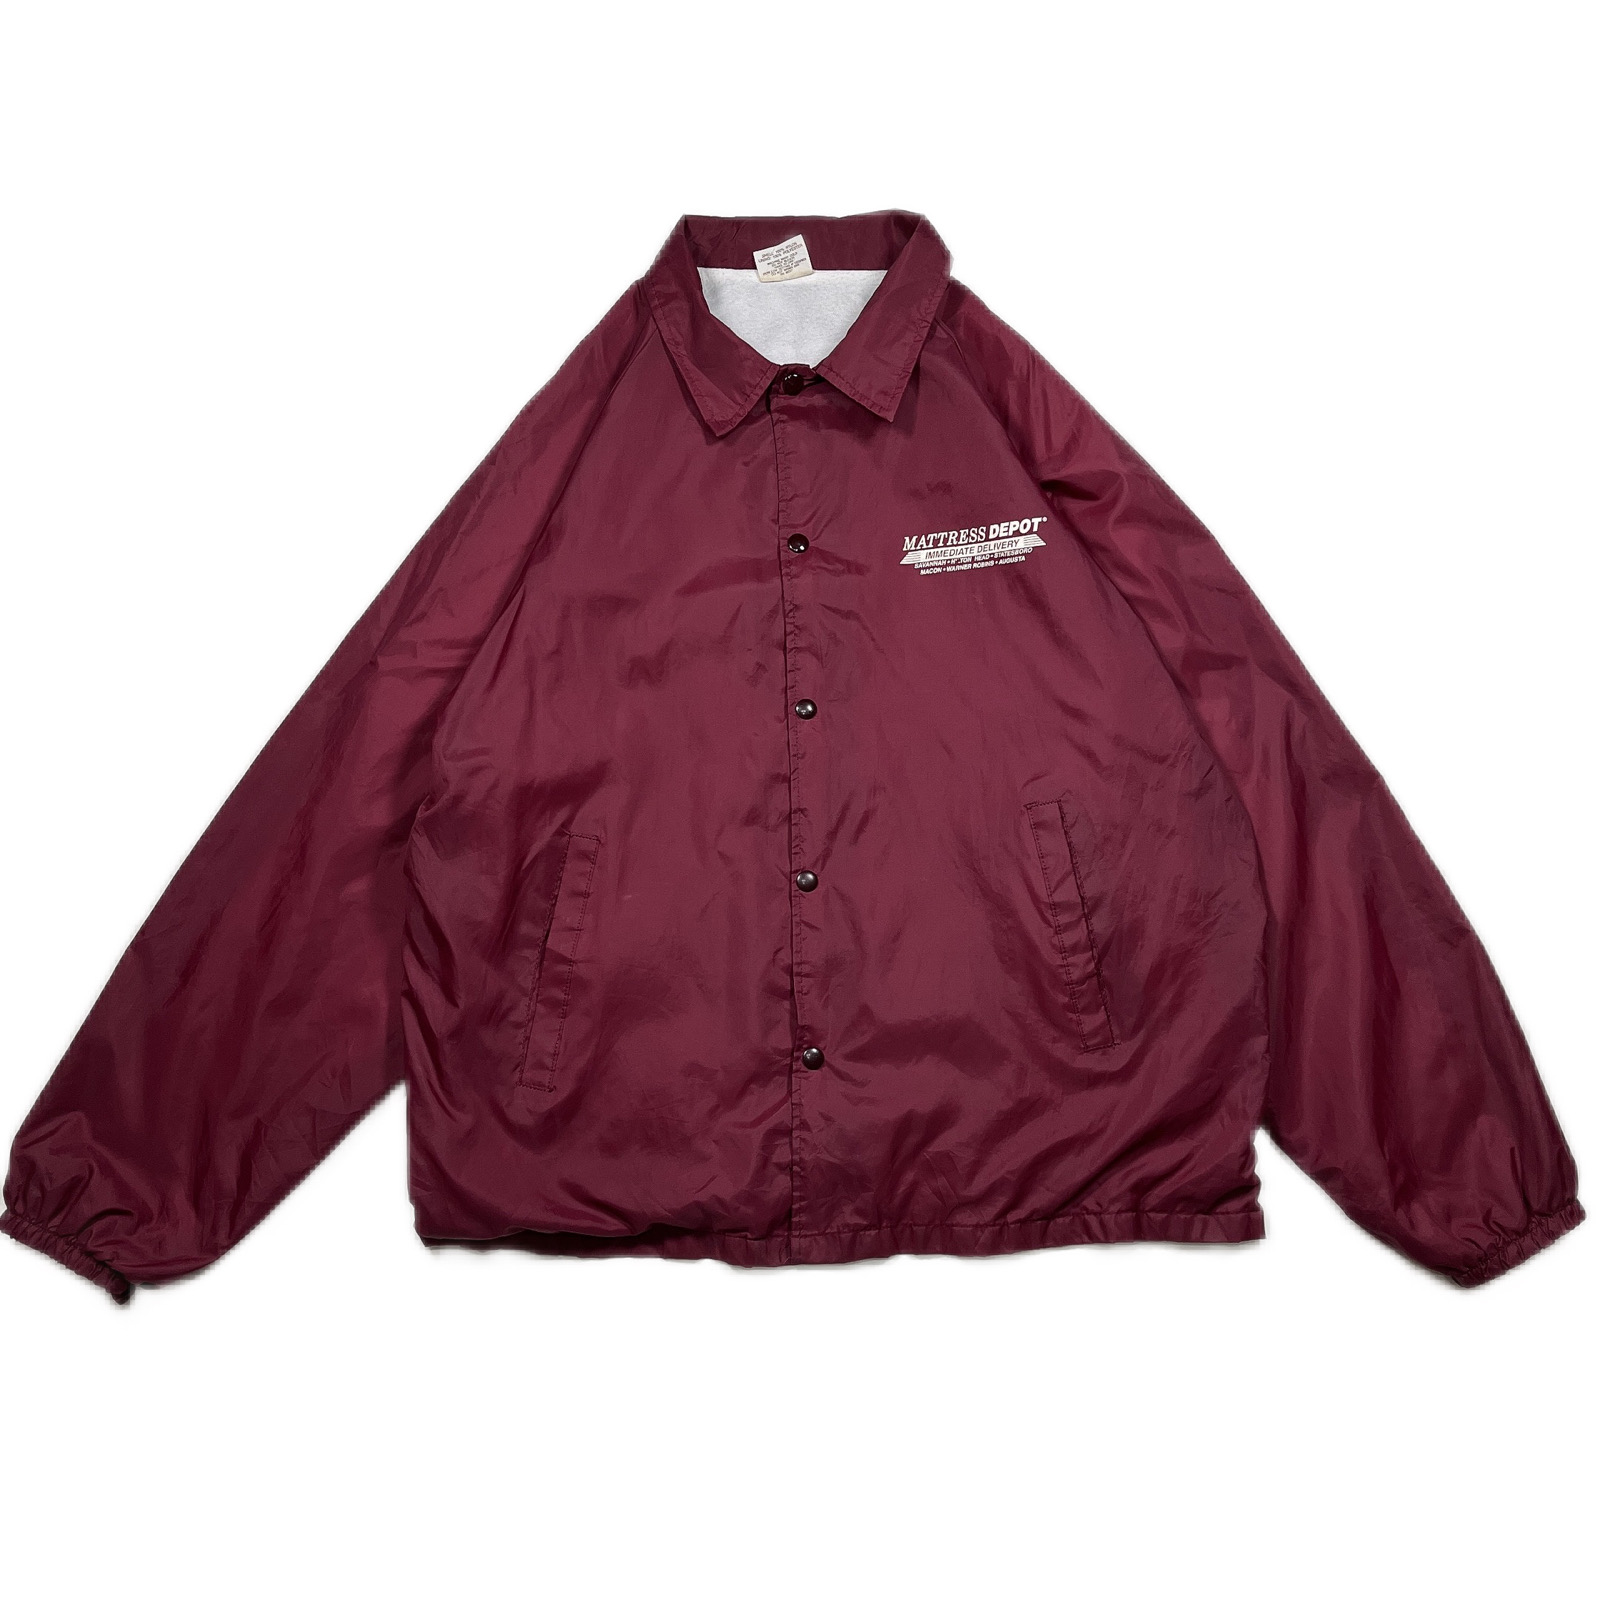 XLsize coach jacket 231008012